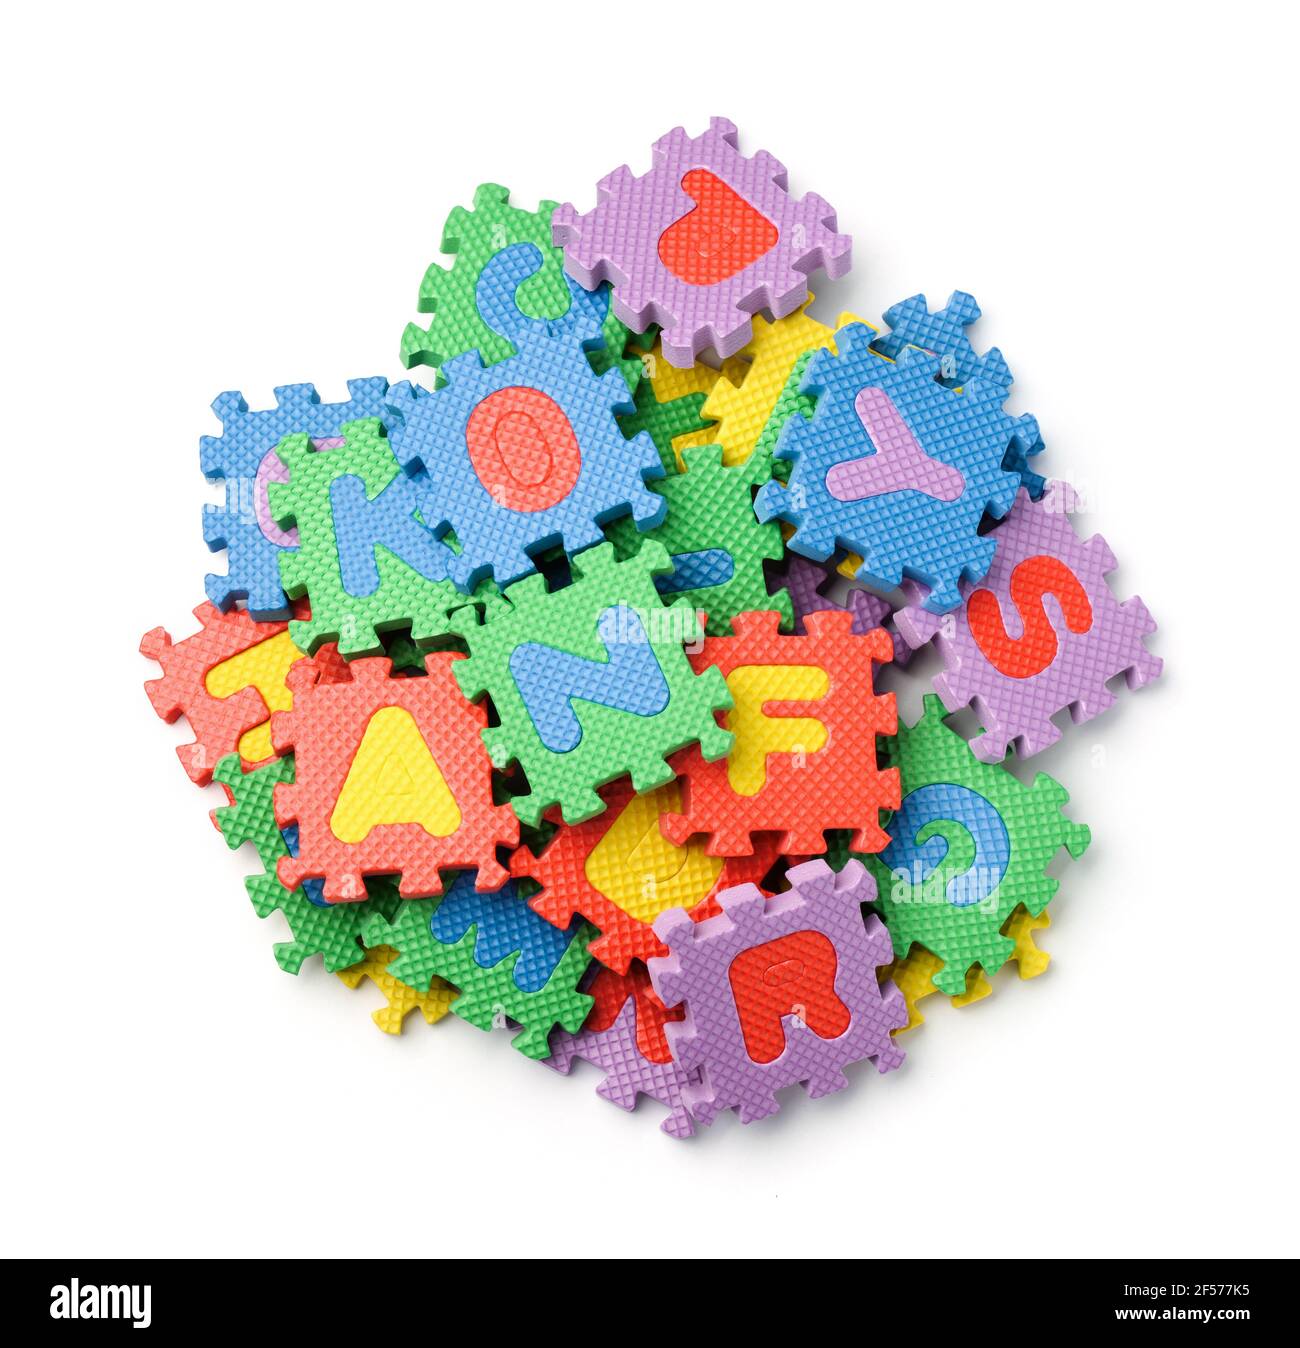 Vista superior de las piezas del rompecabezas del alfabeto de la espuma colorful aisladas encendido blanco Foto de stock